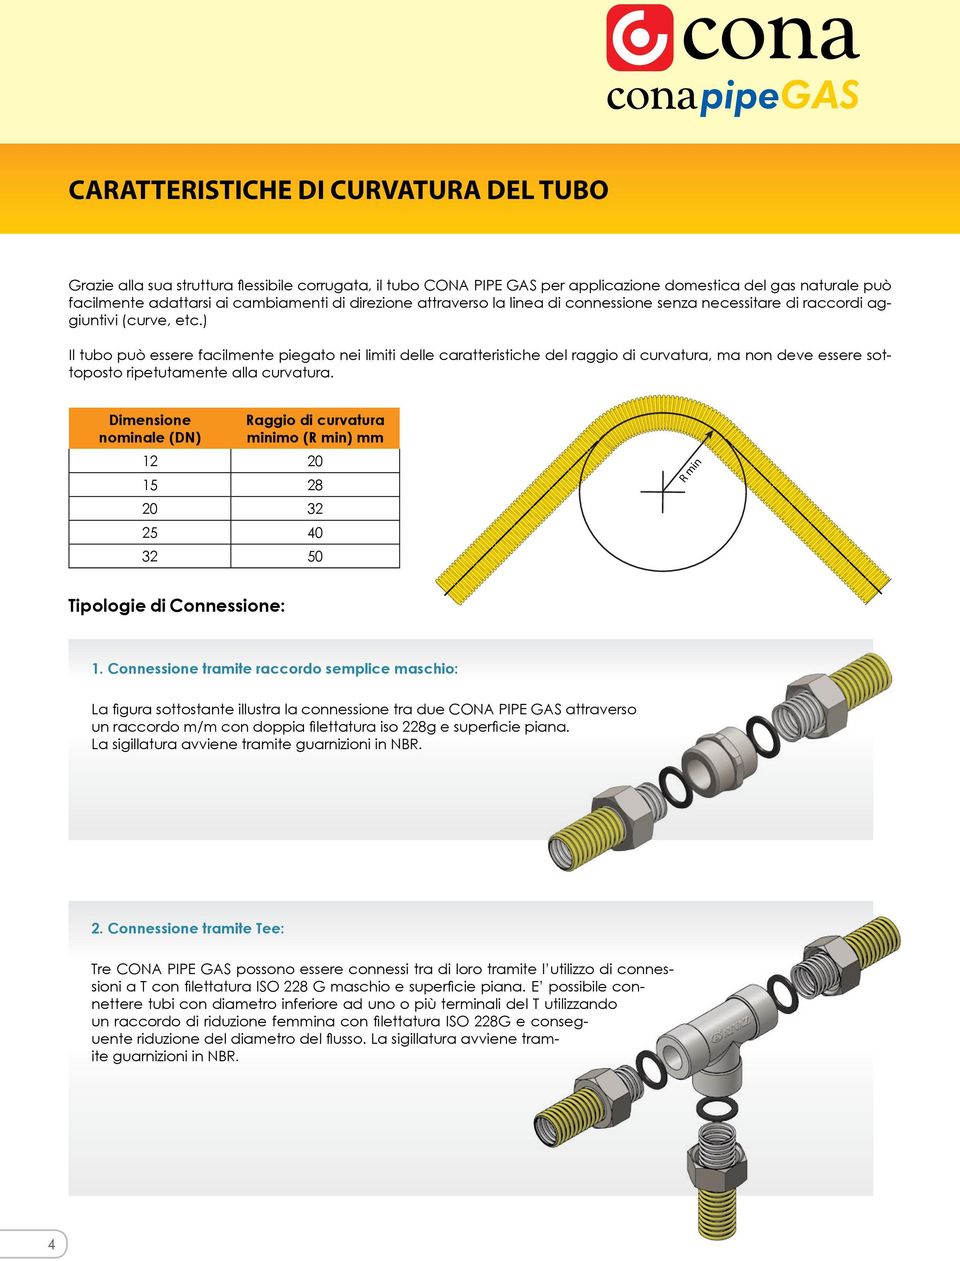 ) Il tubo può essere facilmente piegato nei limiti delle caratteristiche del raggio di curvatura, ma non deve essere sottoposto ripetutamente alla curvatura.